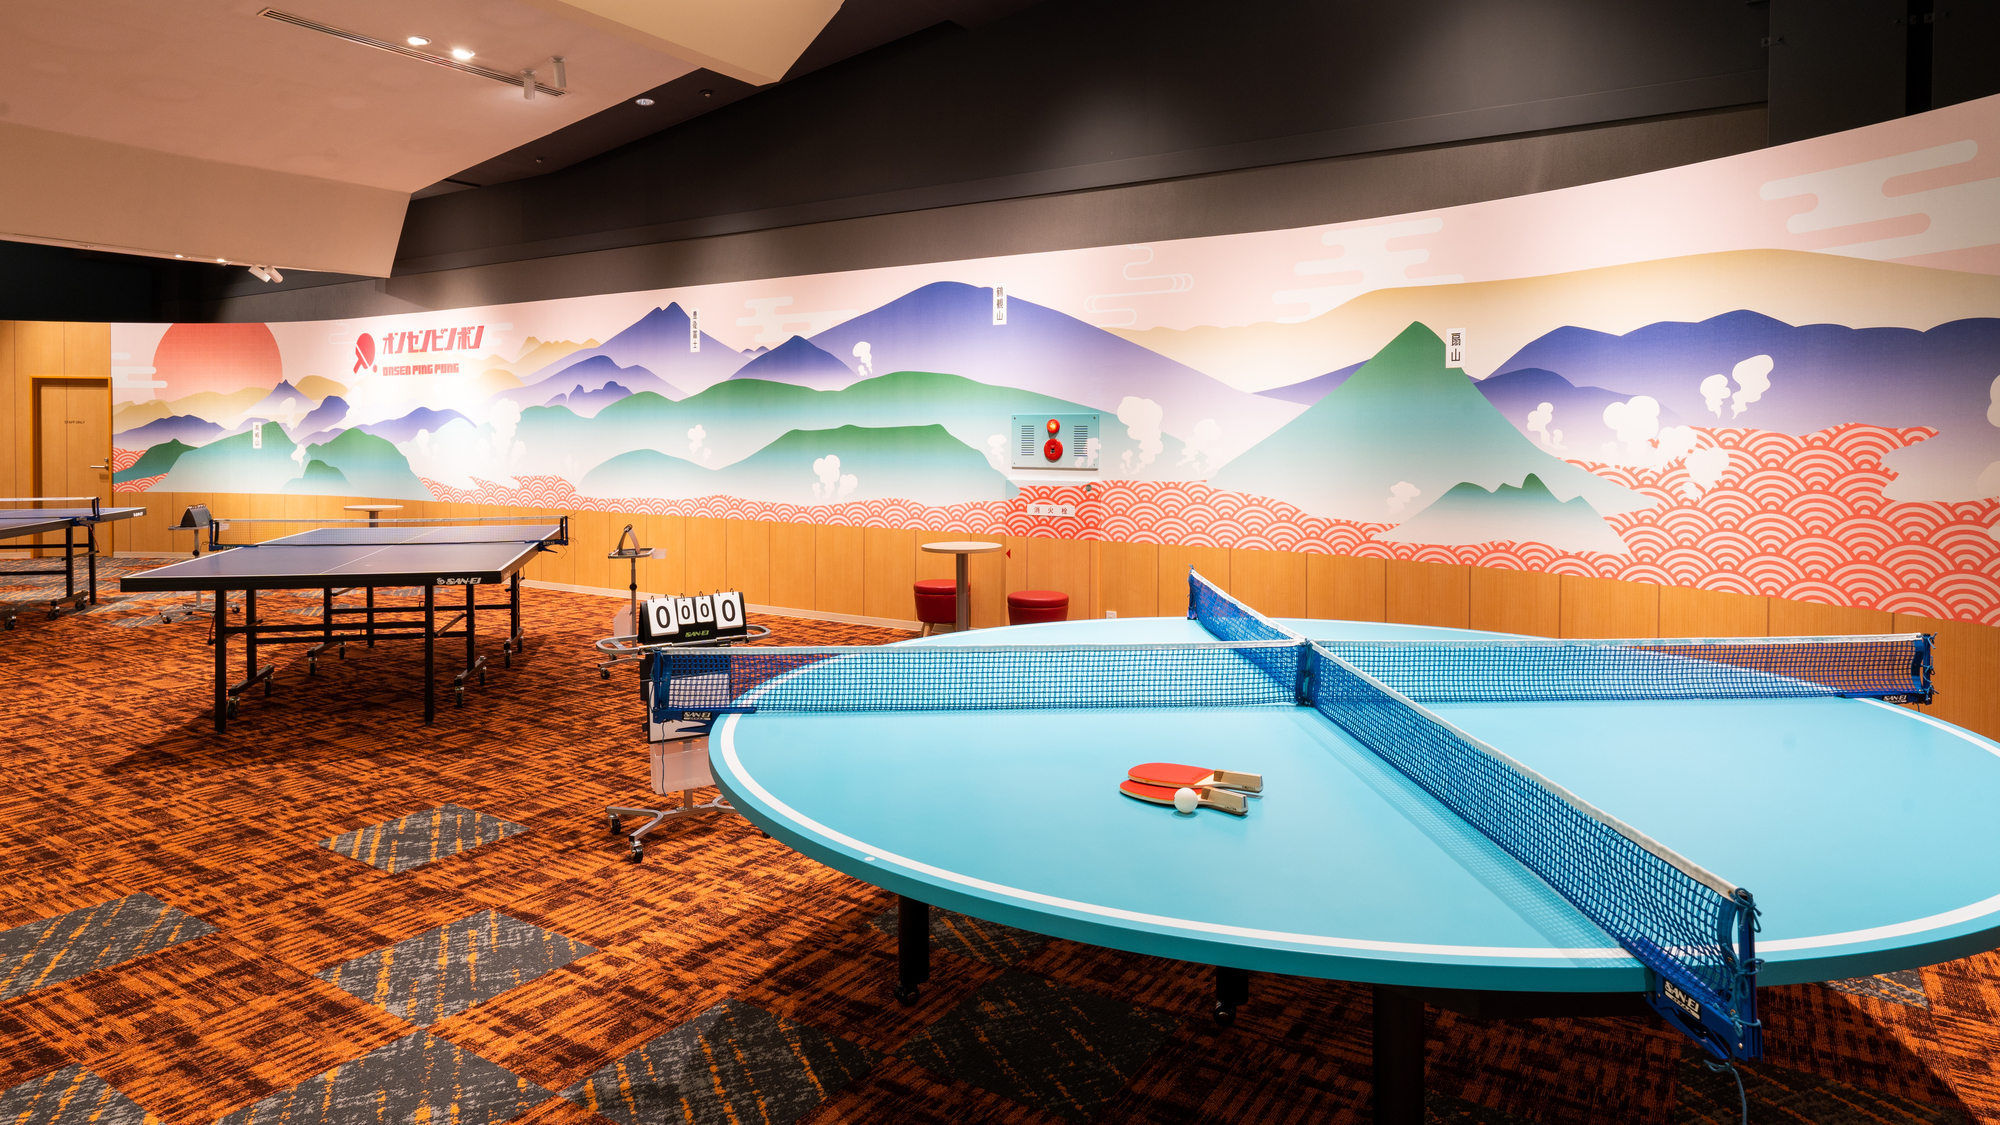 【SUGINOI BOWL&PARK・卓球】４人で遊べる円形卓球台でいつもと違った対戦も可能